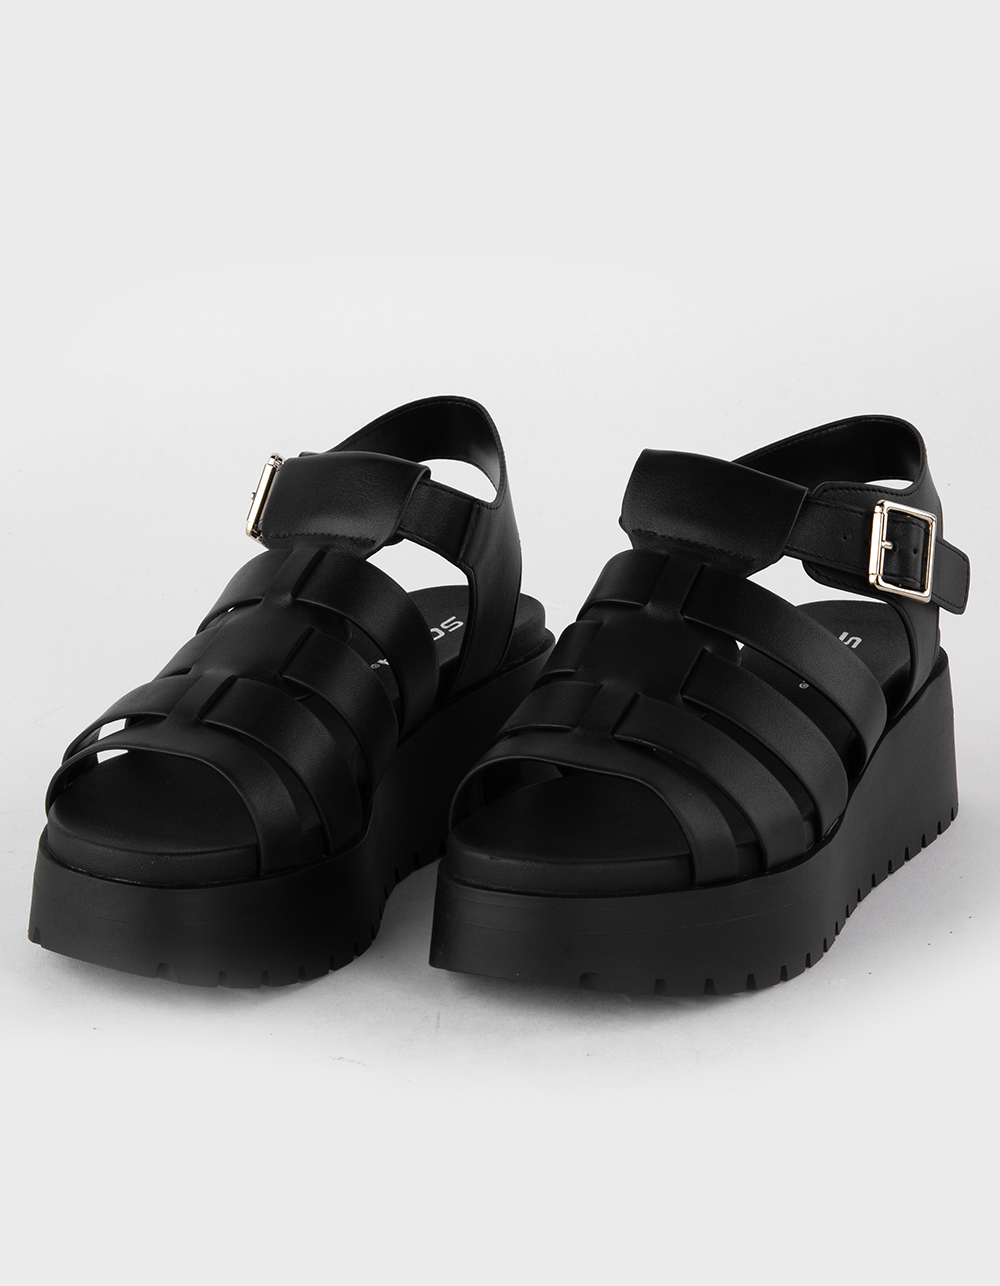 Soda In Line Wide Fit Sandal - Women's Shoes in Black